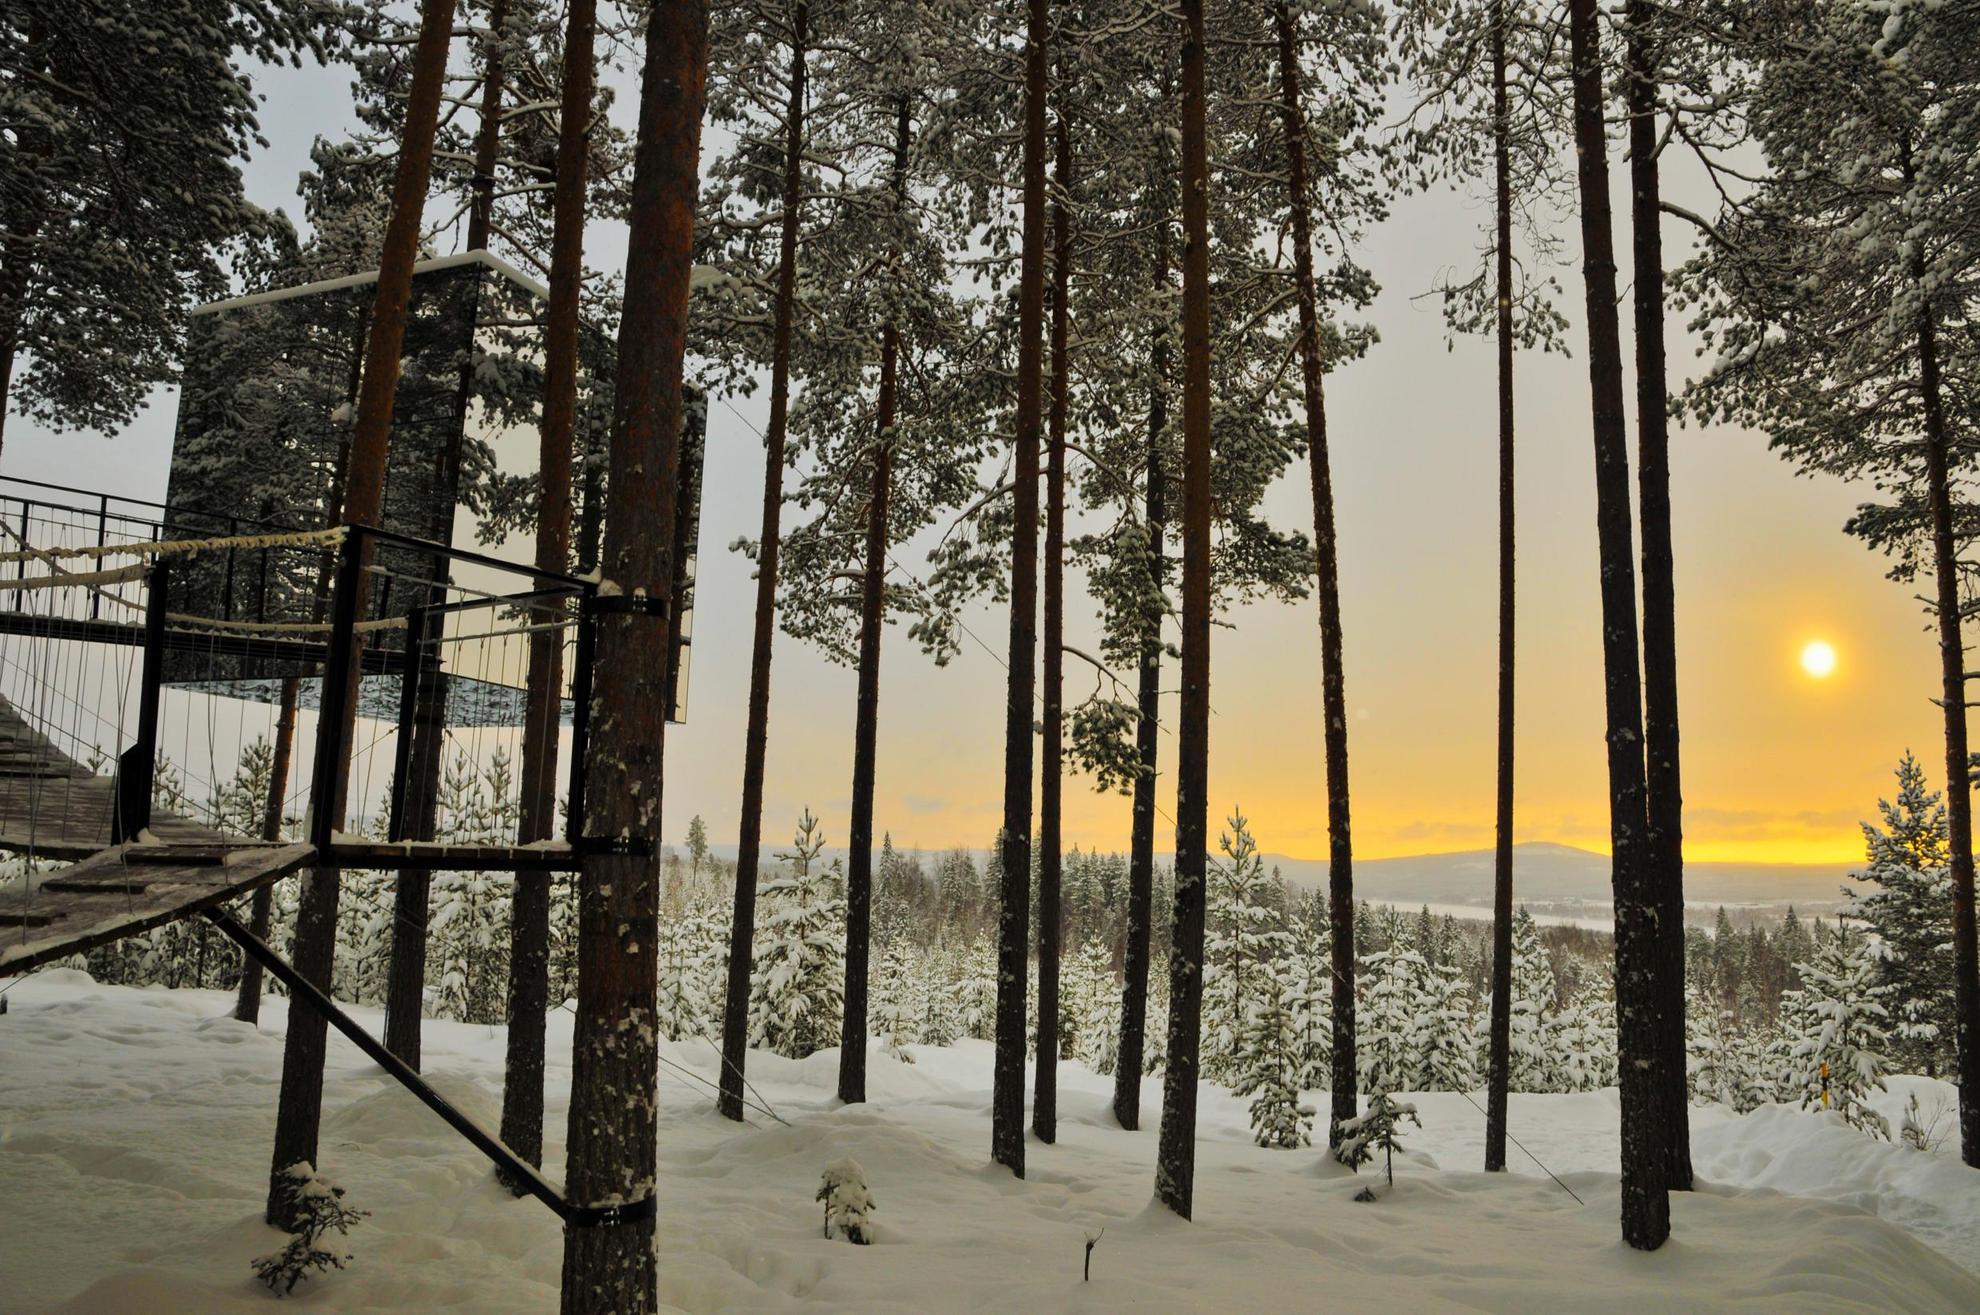 Le Treehôtel est un hôtel dans les arbres tout en verre miroir, situé dans une forêt enneigée en Laponie suédoise.